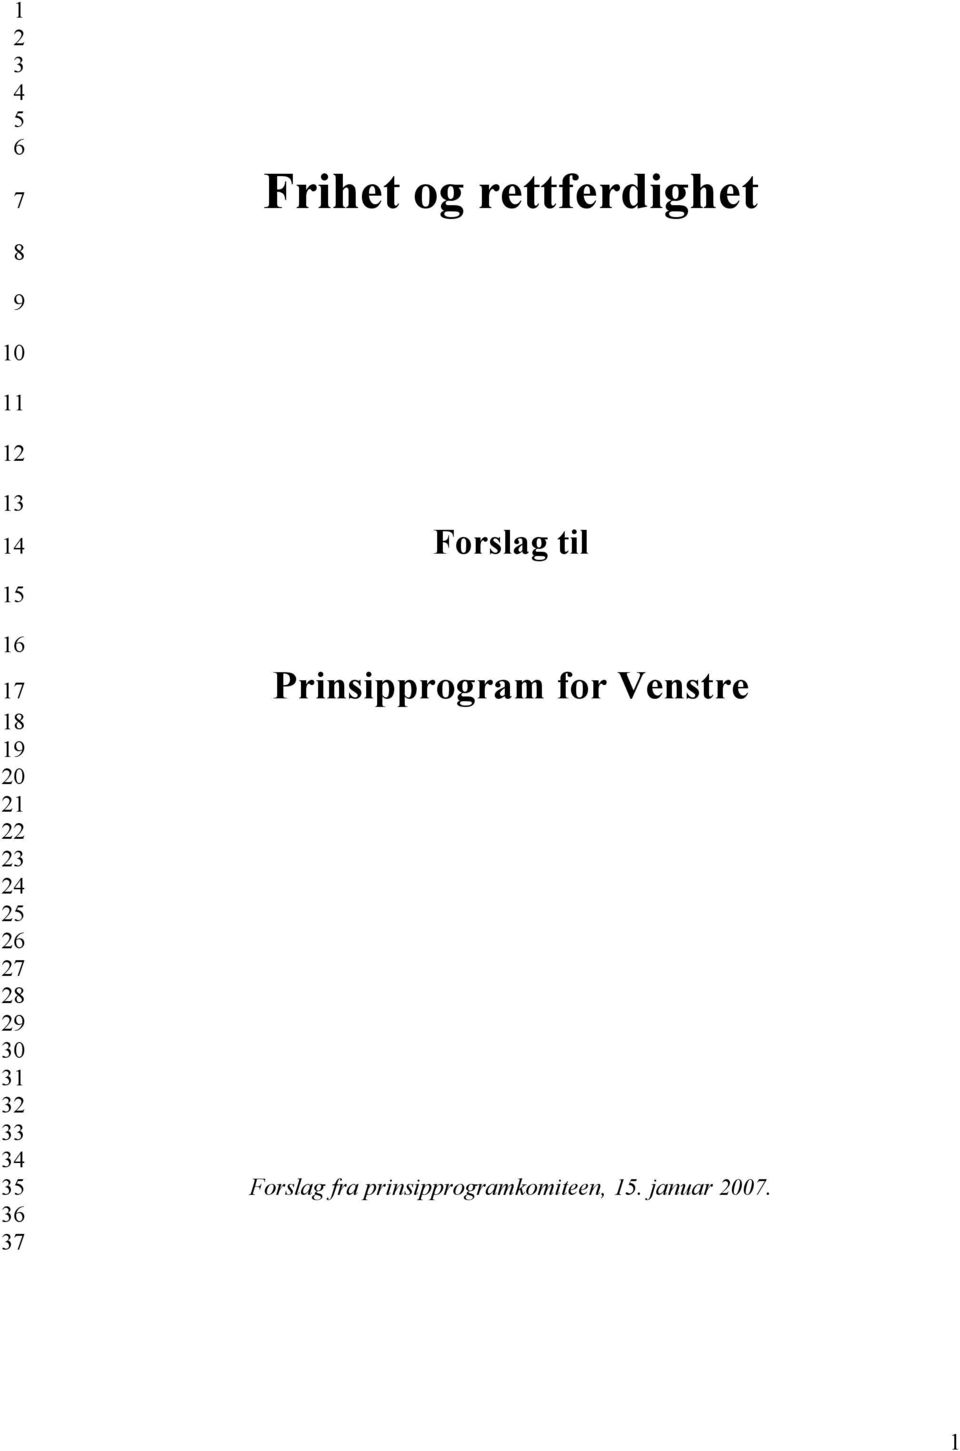 Prinsipprogram for Venstre